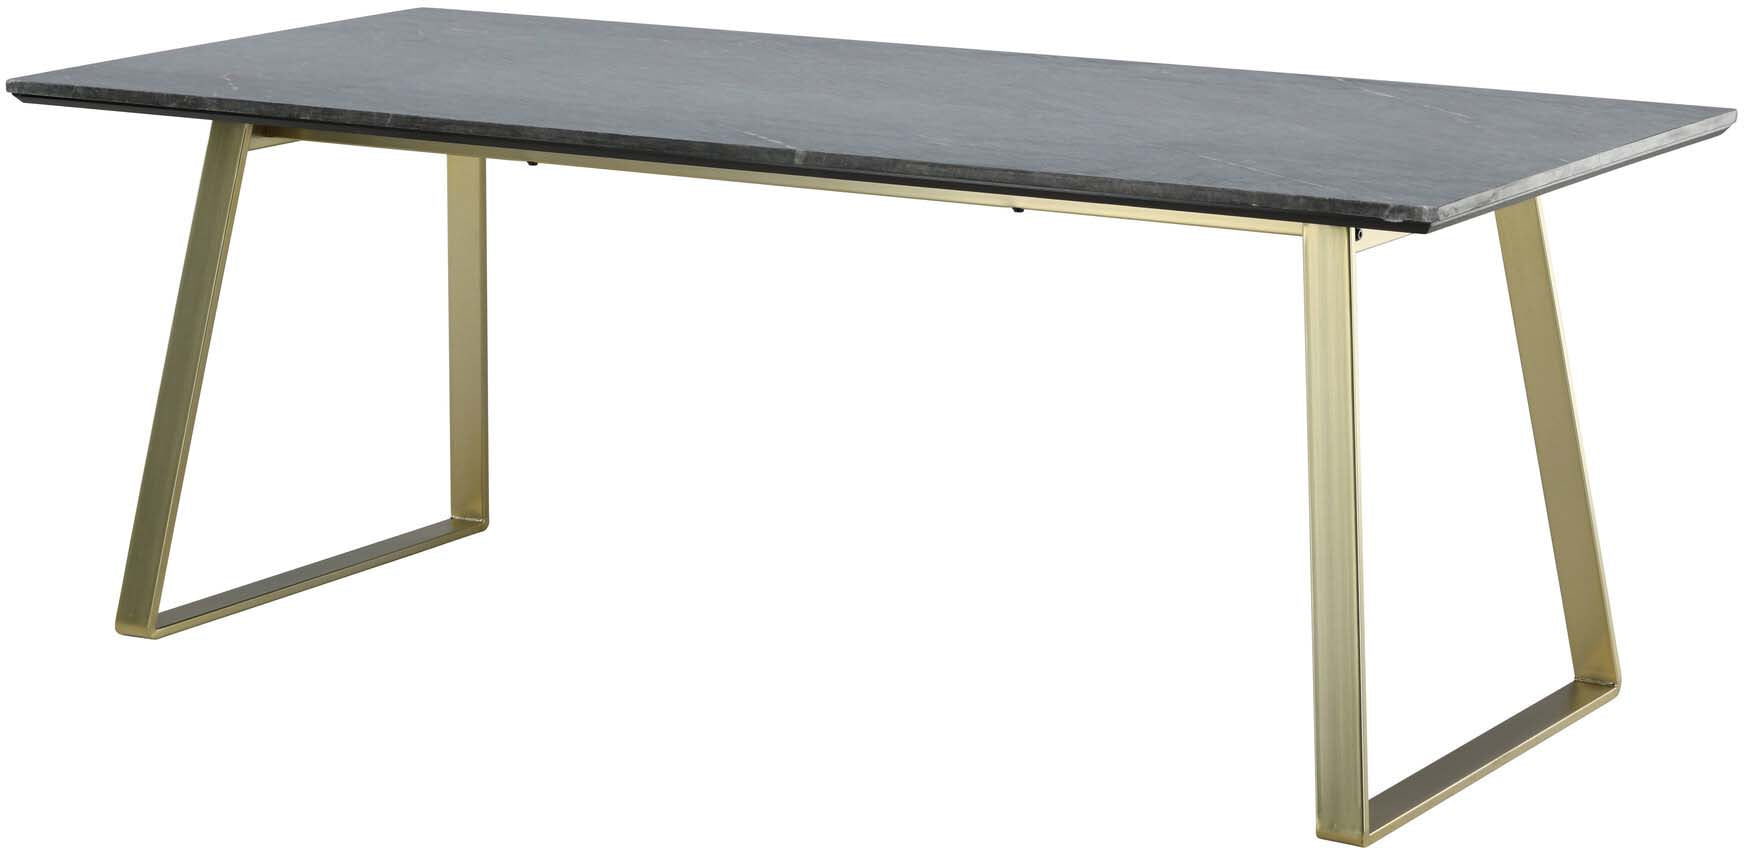 Estelle Tisch in Grau / Gold präsentiert im Onlineshop von KAQTU Design AG. Esstisch ist von Venture Home